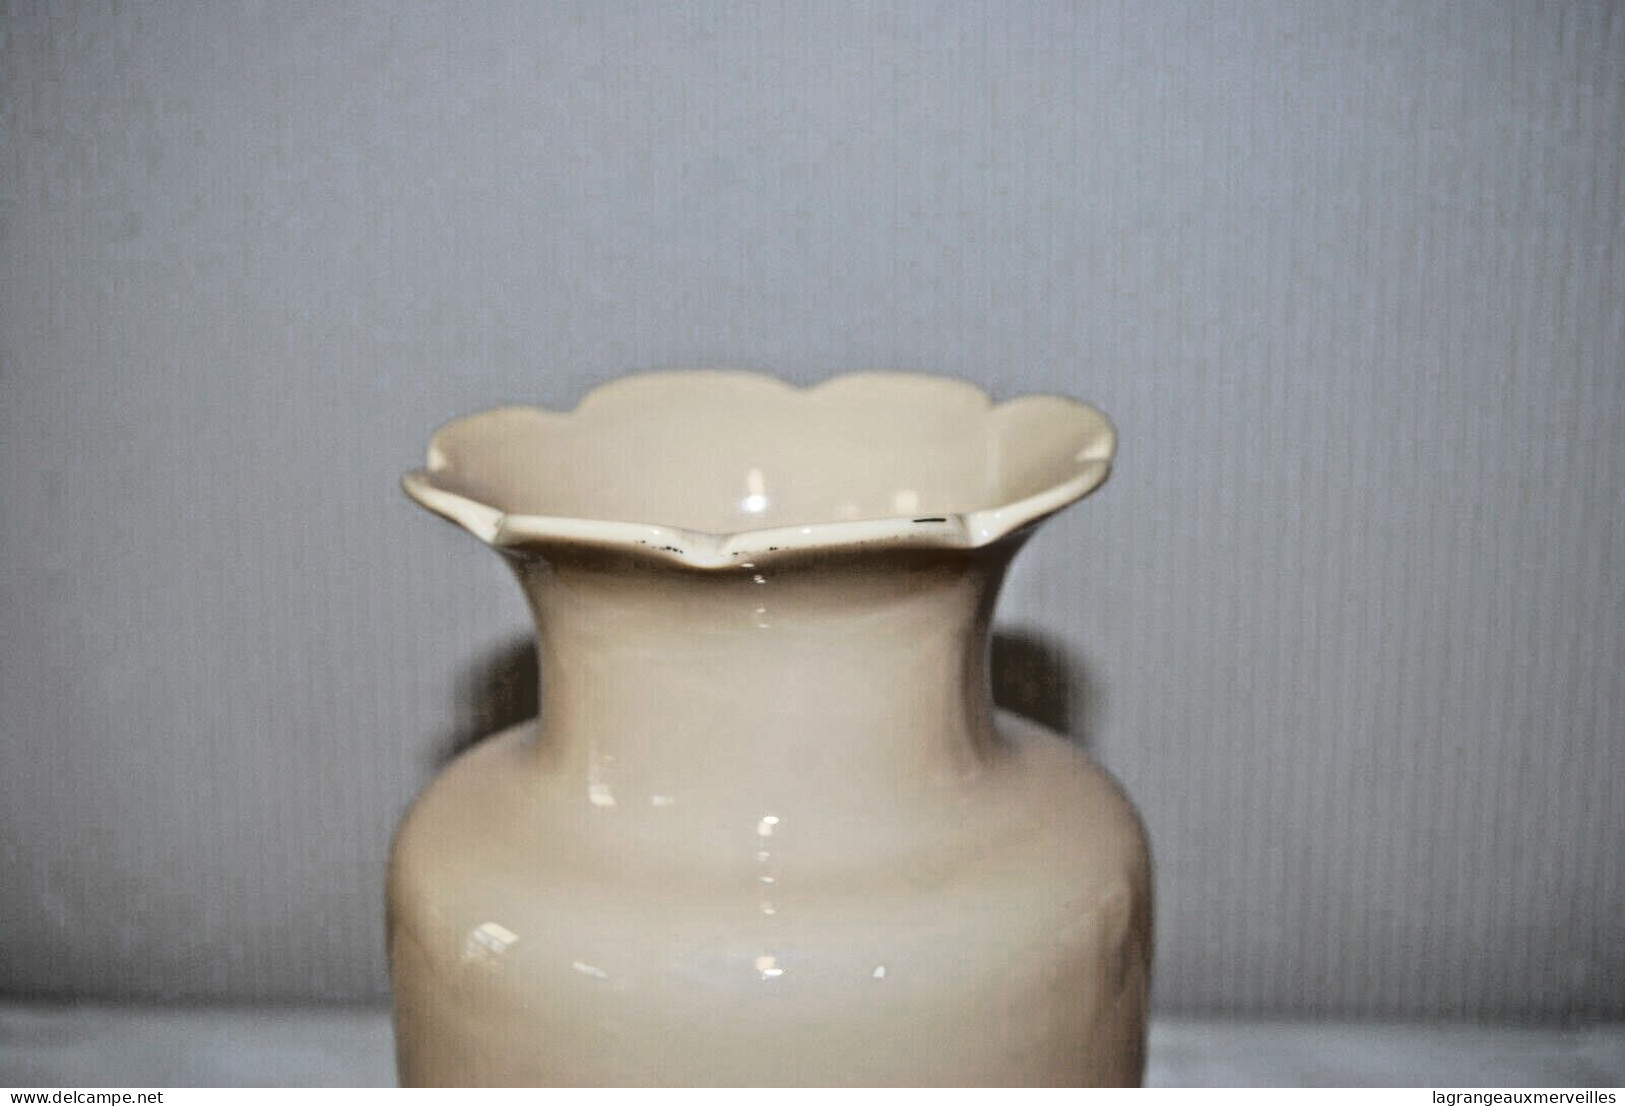 E1 Ancien Vase - Cruche - Vase Soliflore - Vazen